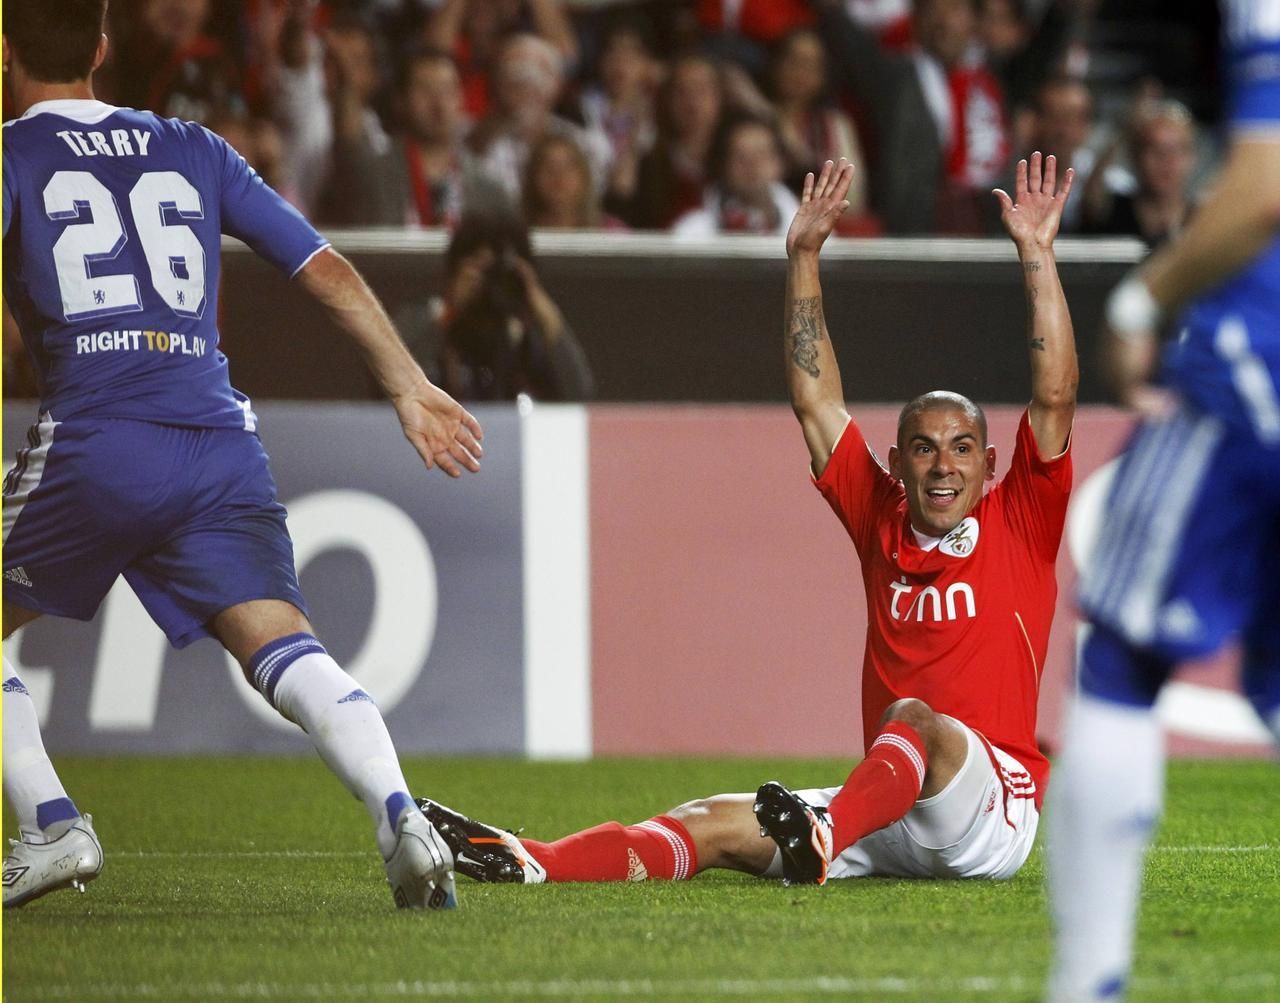 Liga mistrů: Benfica - Chelsea (Maxi Pereira, protesty, Terry)